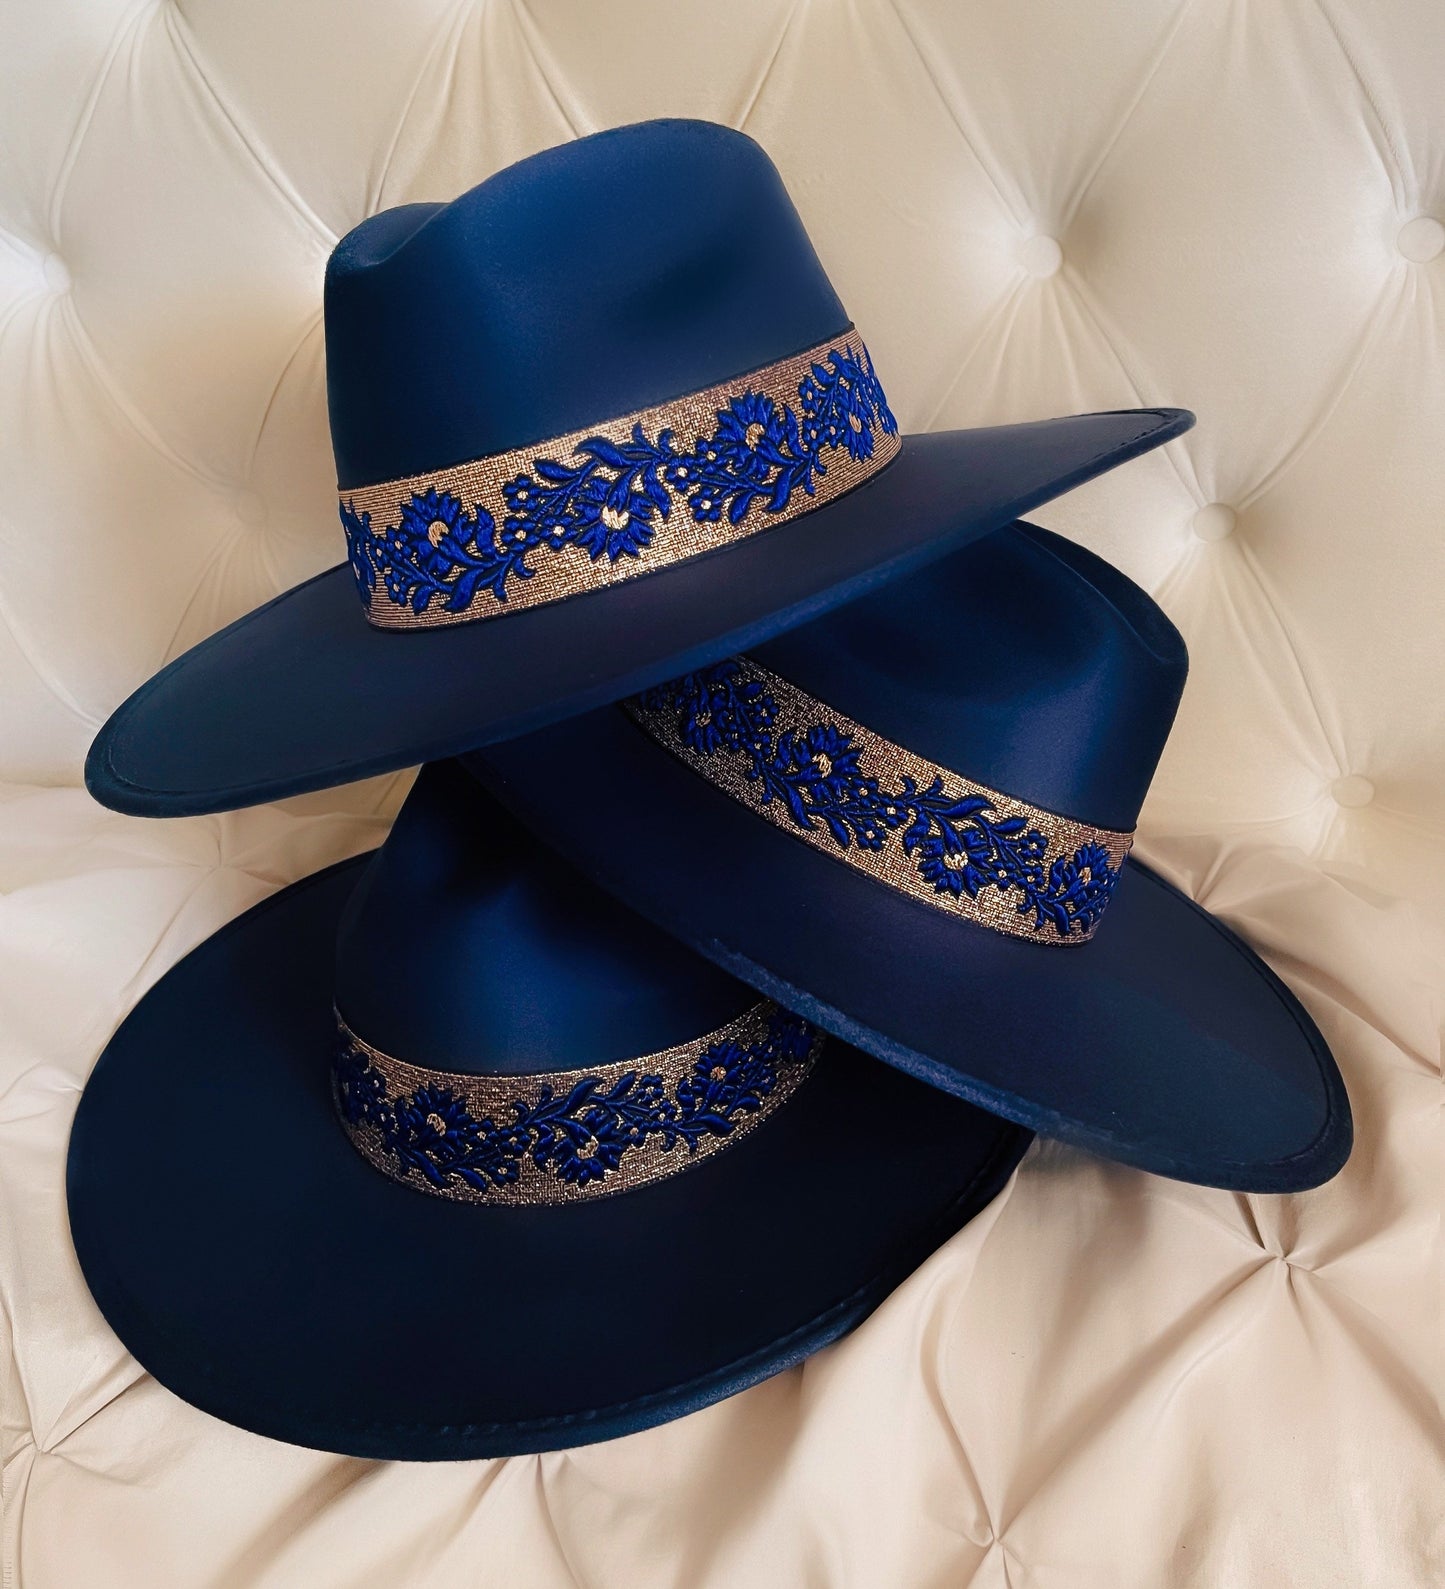 Fedora hat “Audrey” in midnight